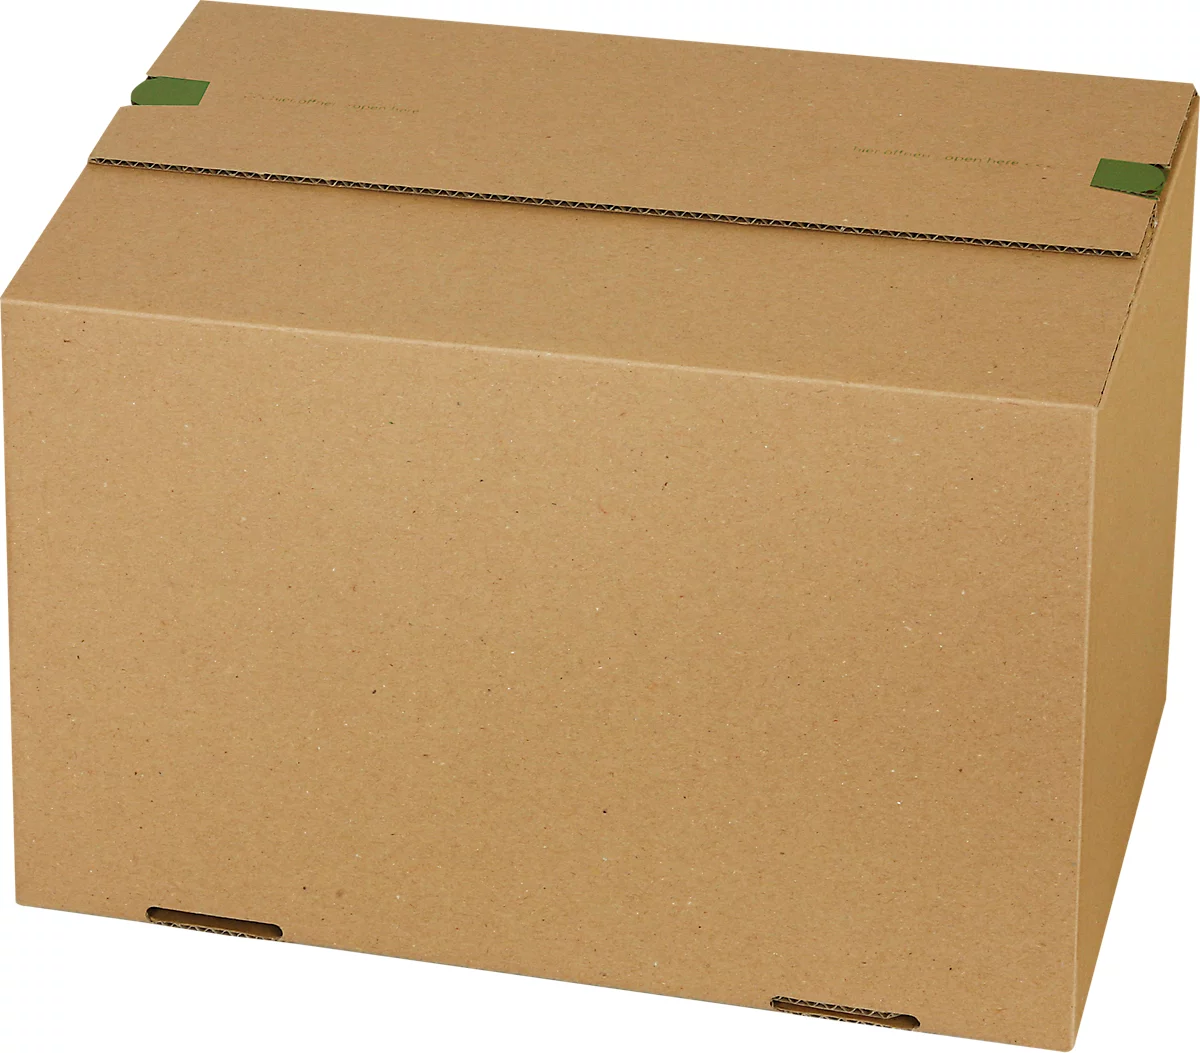 Versandkartons Grünmarie®, 300 x 200 x 200 mm, palettenoptimiert, Automatikboden, bis 20 kg, 100 % recycelbar, FSC®-Wellpappe, braun, 20 Stück